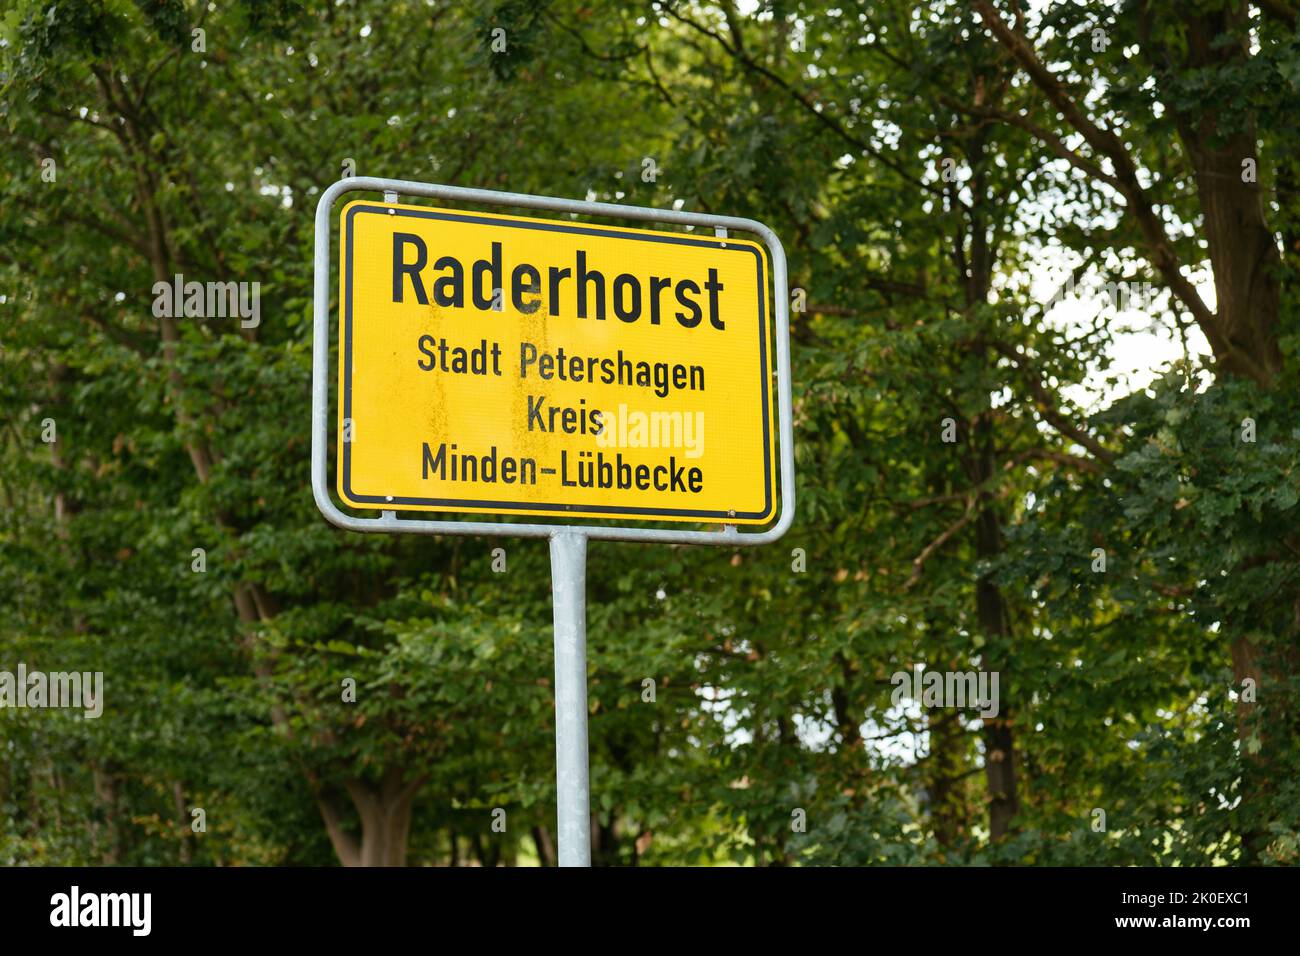 Señal de la ciudad de Raderhorst, un barrio en Petershagen, Minden-Lübbecke, Renania del Norte-Westfalia, Alemania Foto de stock